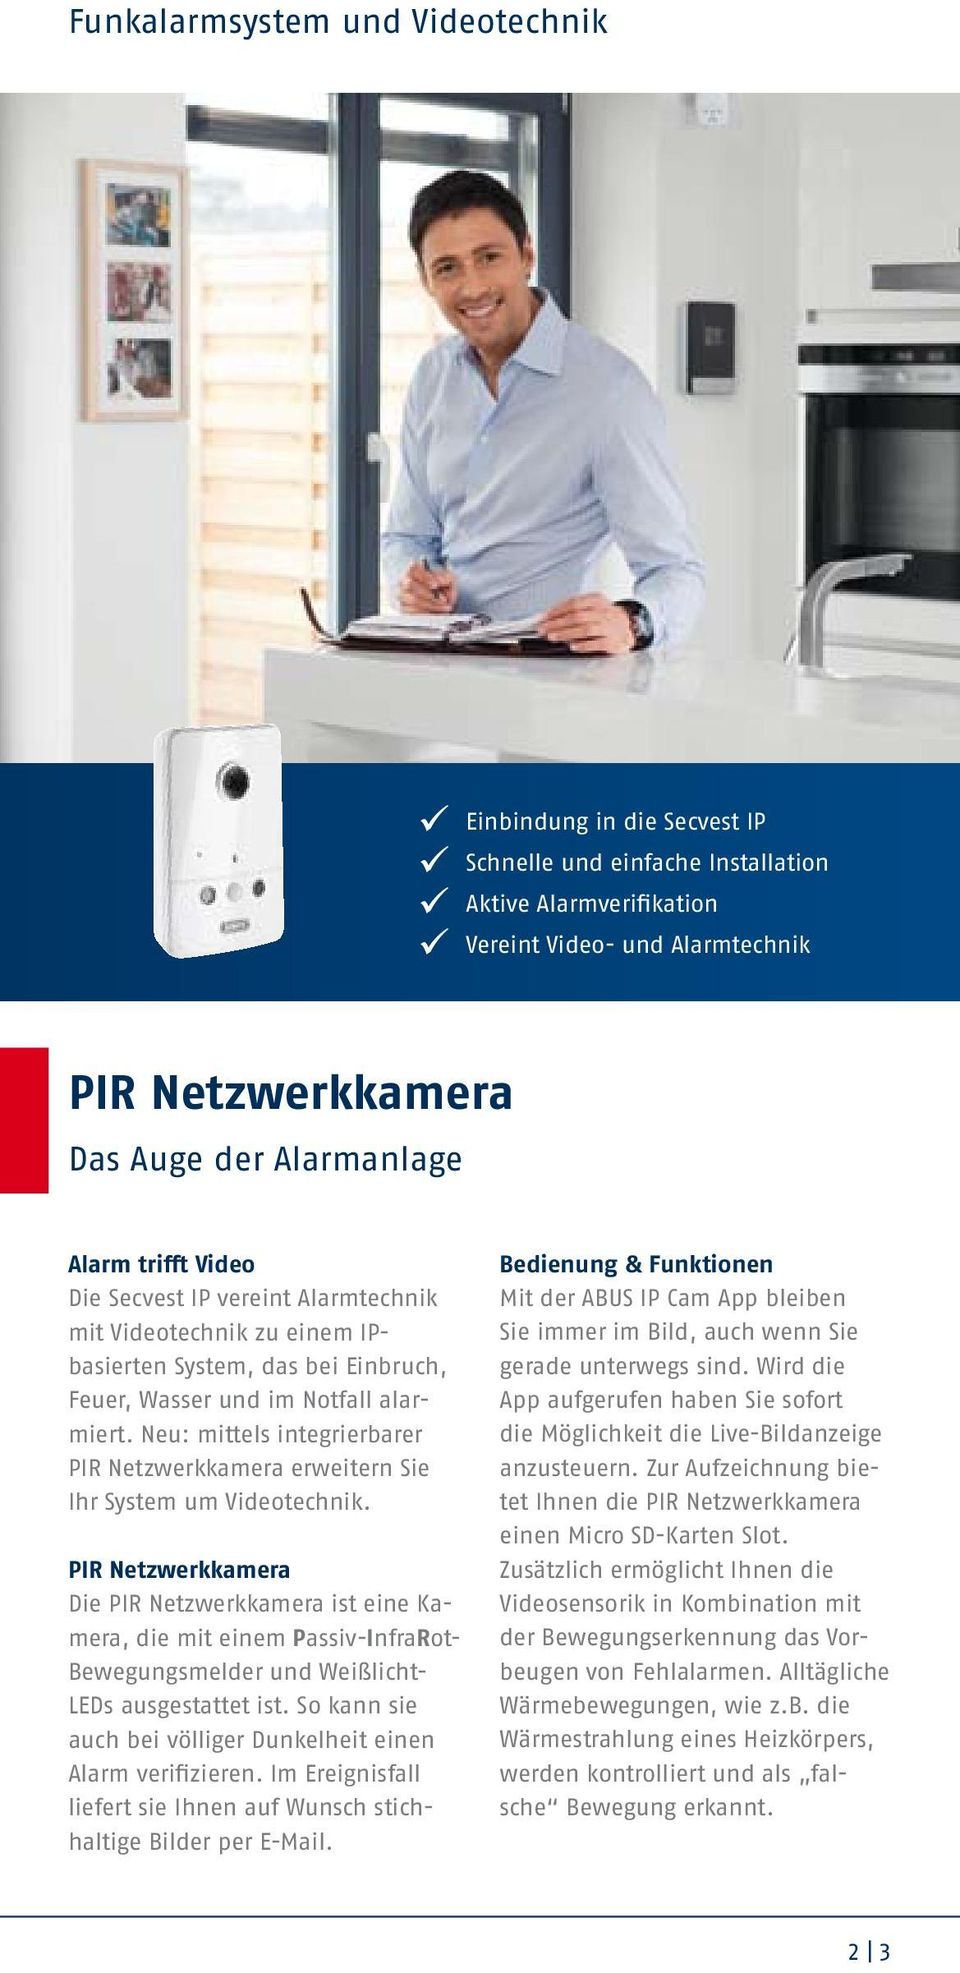 Neu: mittels integrierbarer PIR Netzwerkkamera erweitern Sie Ihr System um Videotechnik.